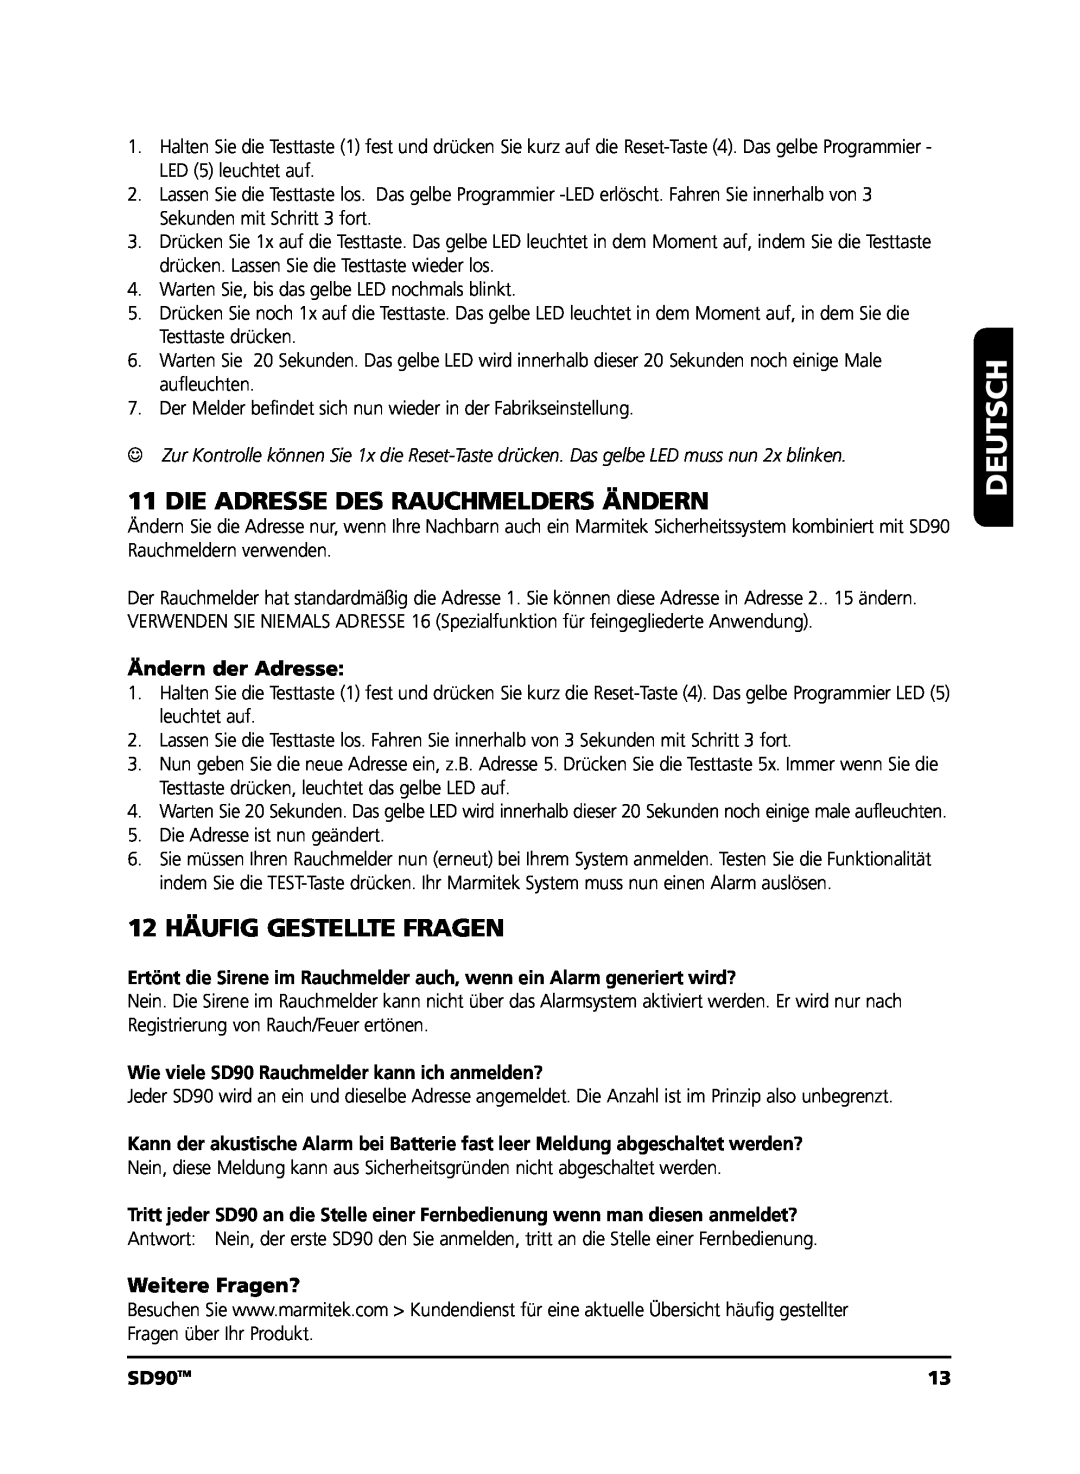 Marmitek user manual Die Adresse Des Rauchmelders Ändern, 12 HÄUFIG GESTELLTE FRAGEN, Deutsch, SD90TM 